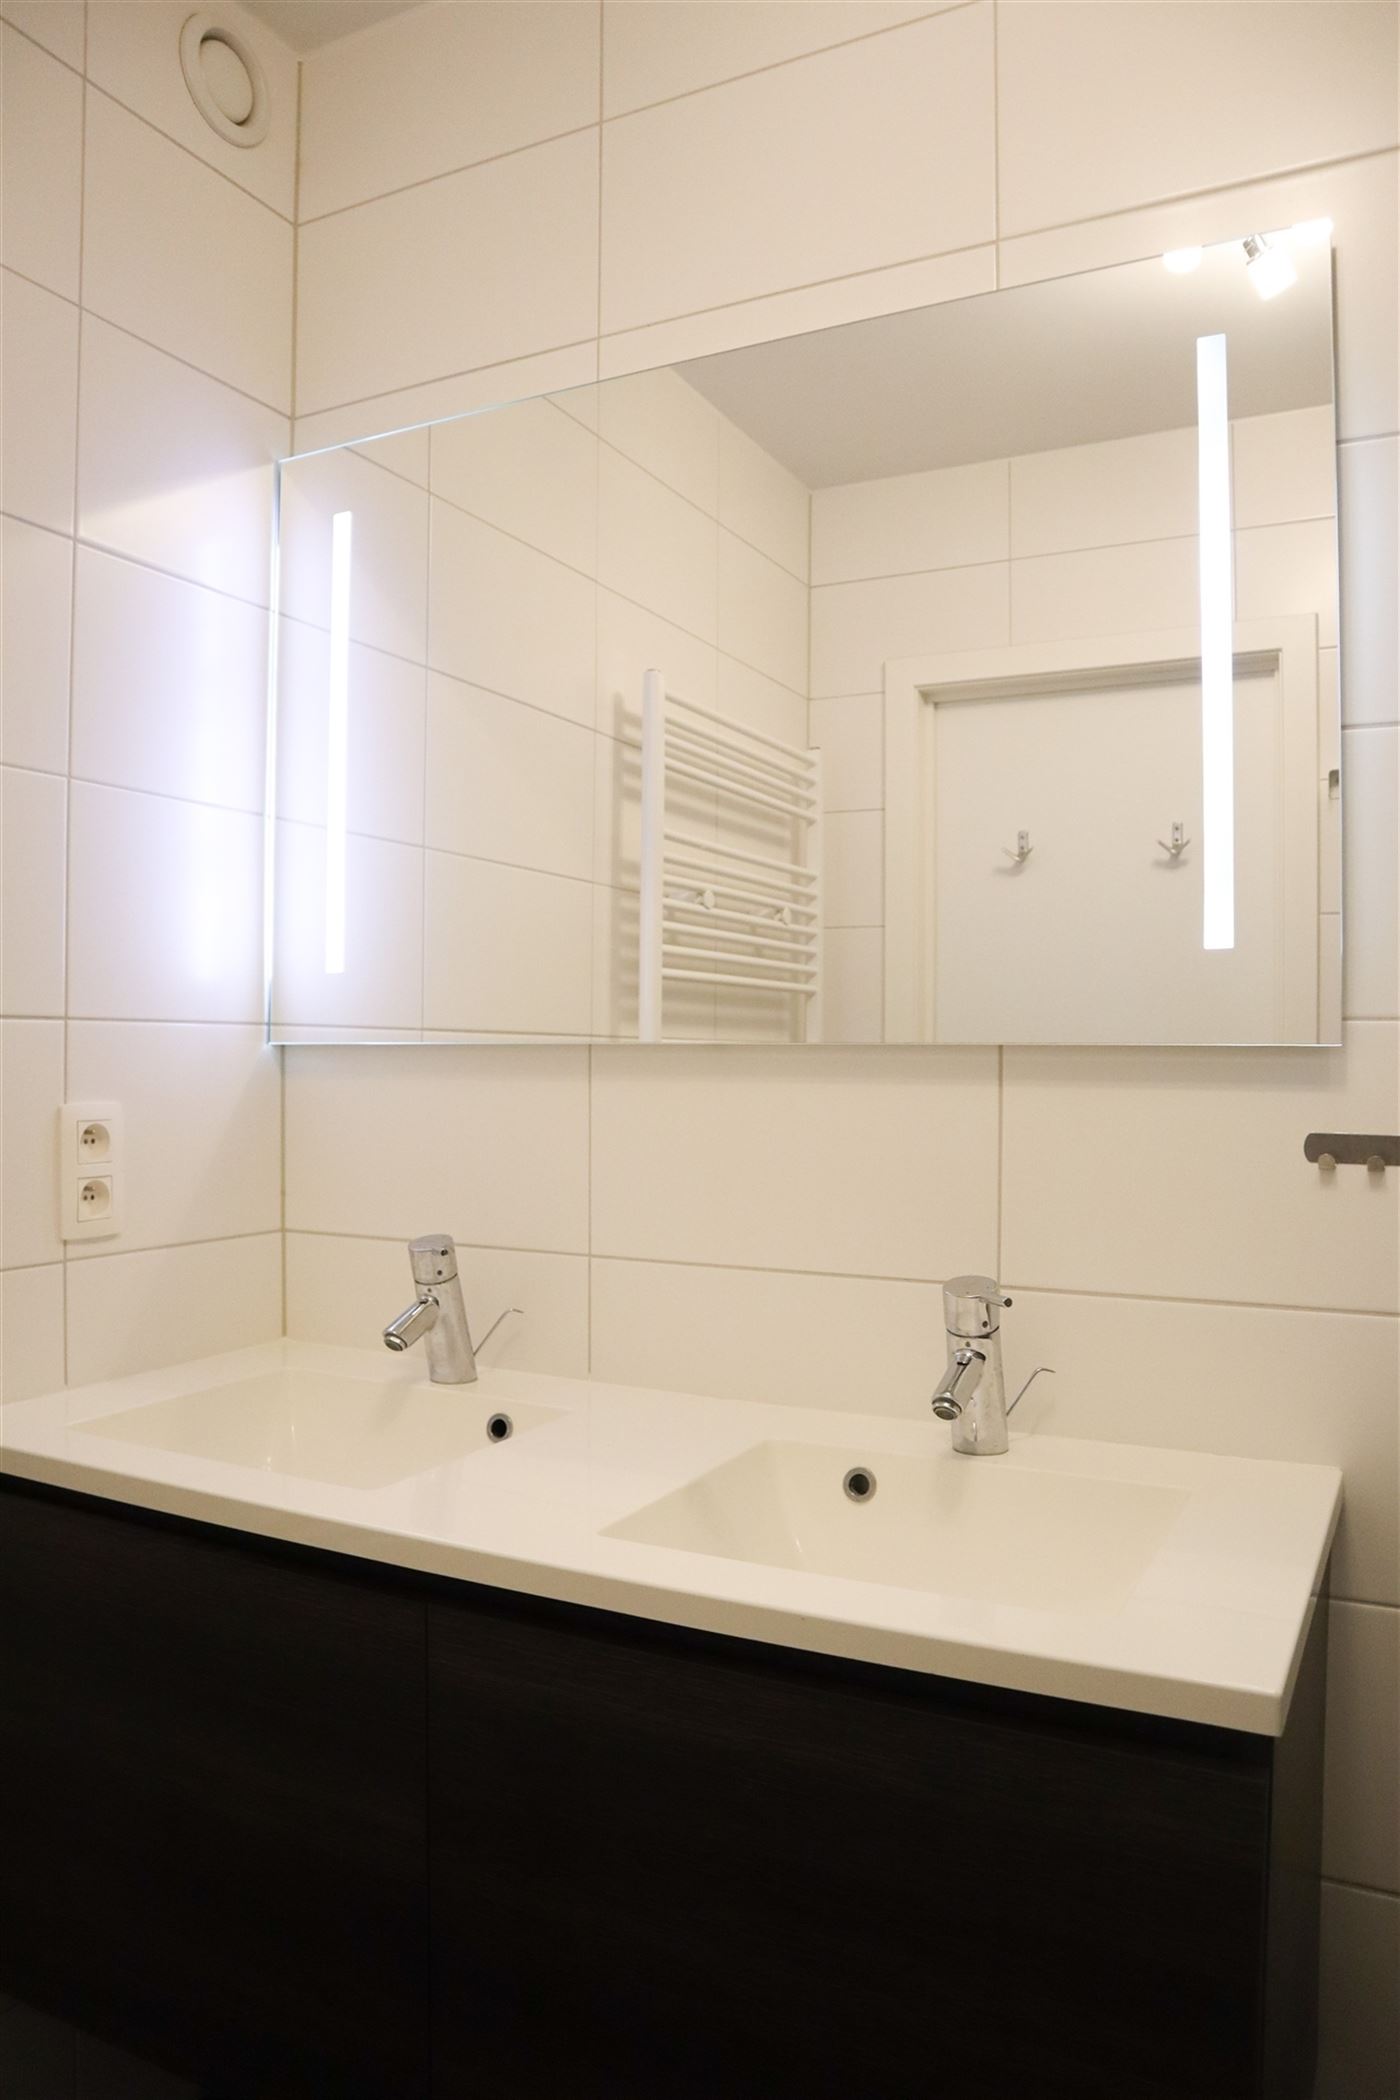 Villa Aello 0203 - Recent fris appartement met twee slaapkamers - Zonnige oriëntatie van op de tweede verdieping - Inkom - Apart toilet - Badkamer me...